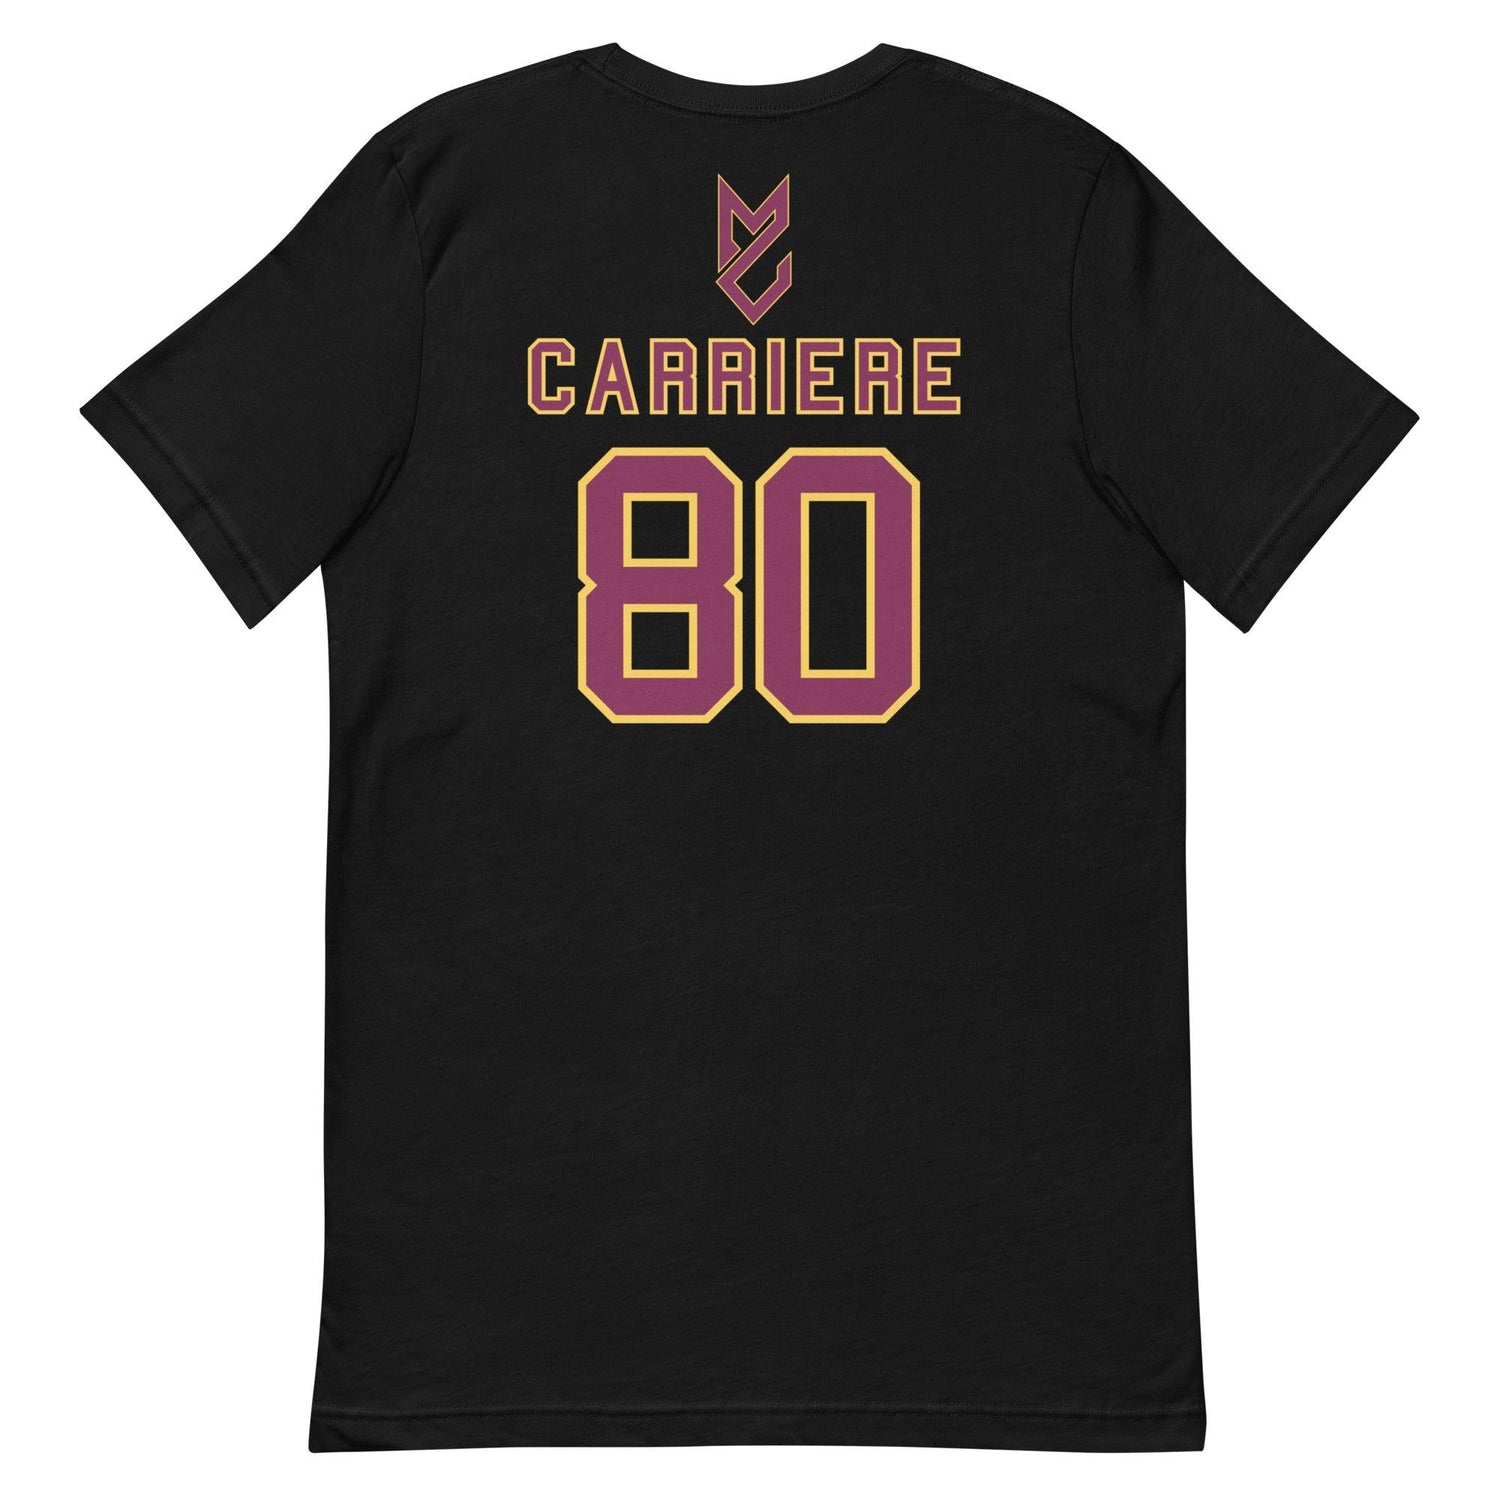 Matteo Carriere "Jersey" t-shirt - Fan Arch